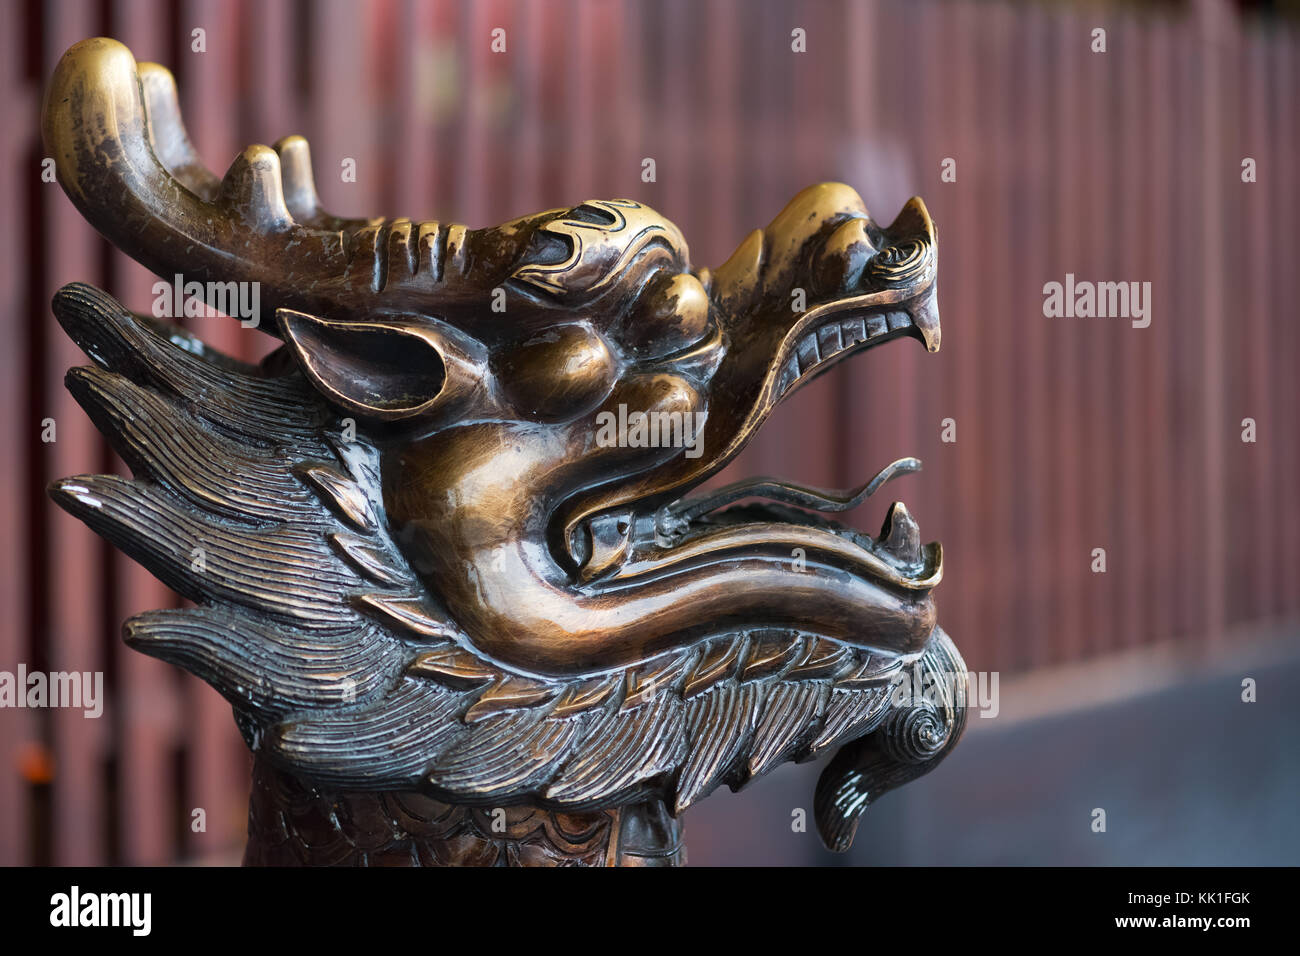 Golden color dragon head scultpure Stock Photo